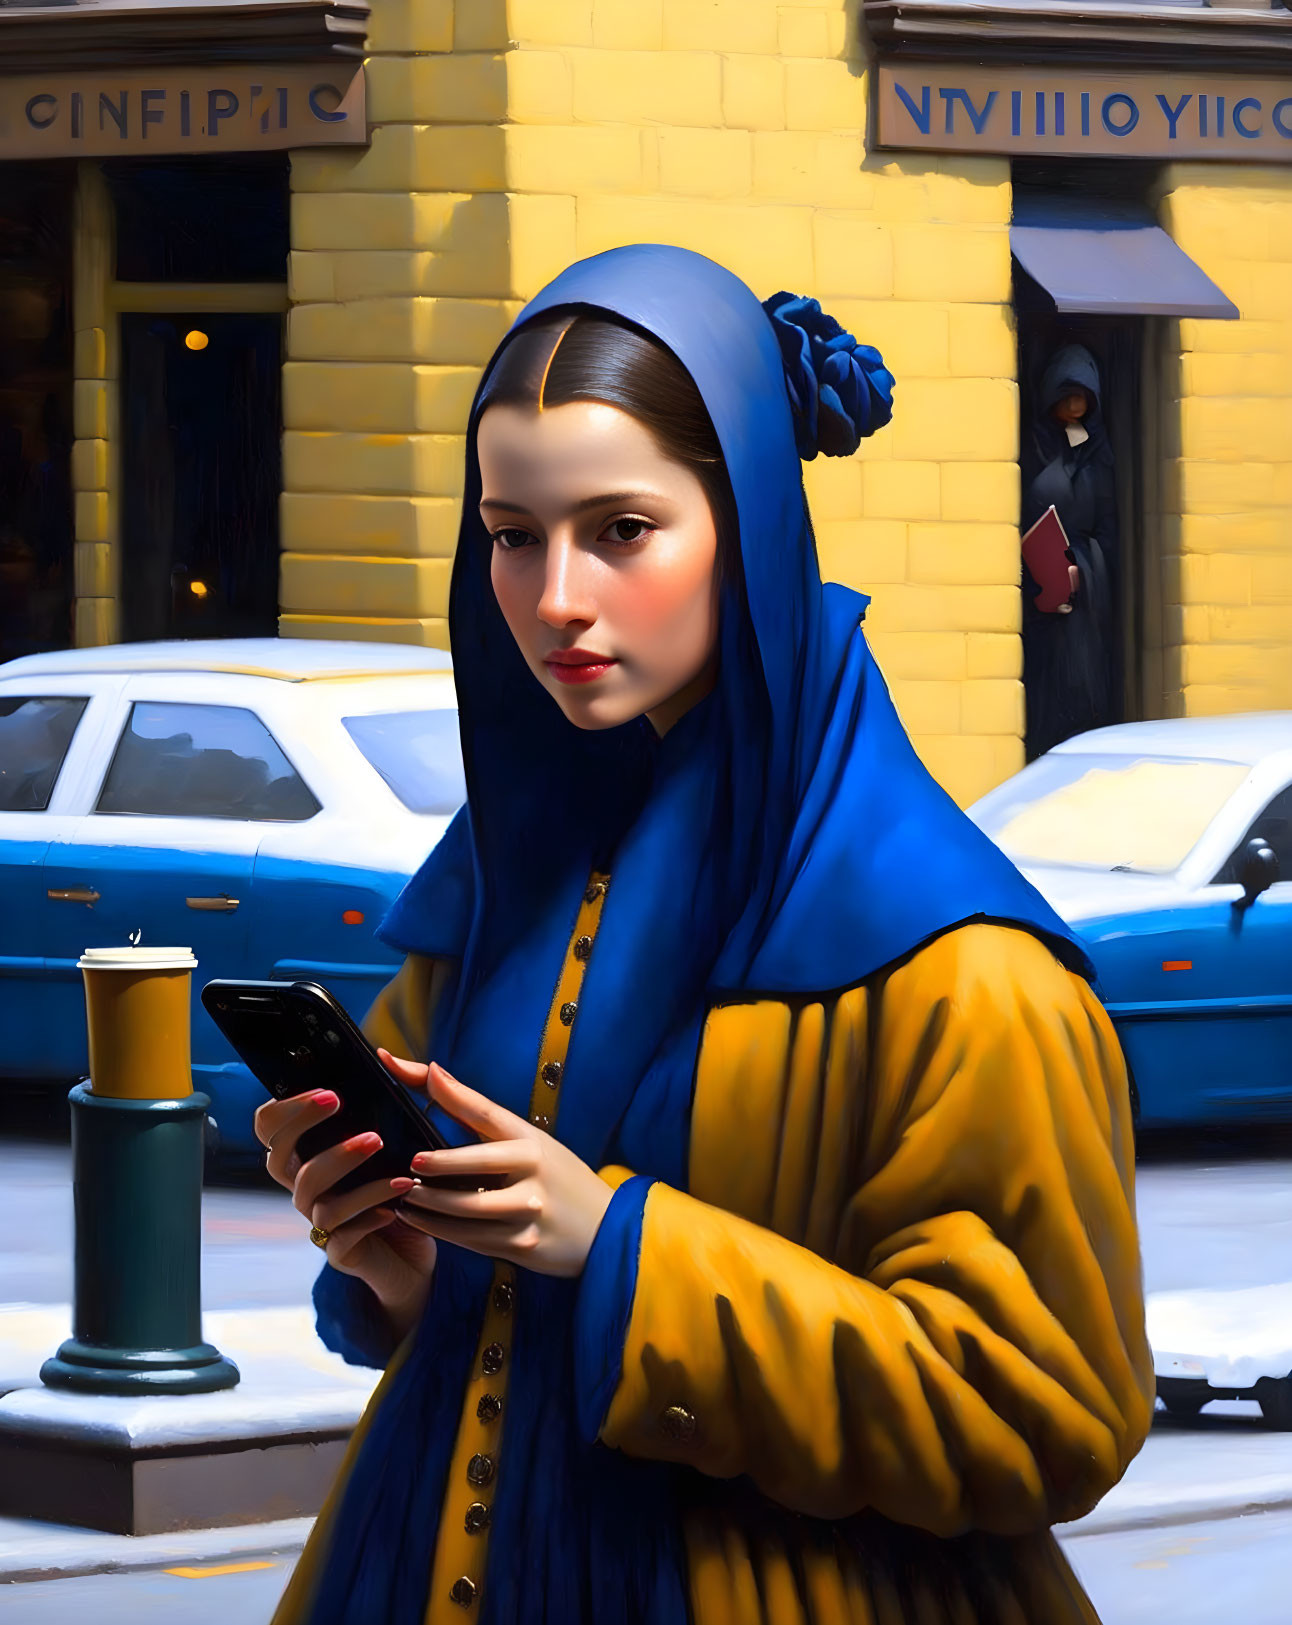 Vermeer style smart phone